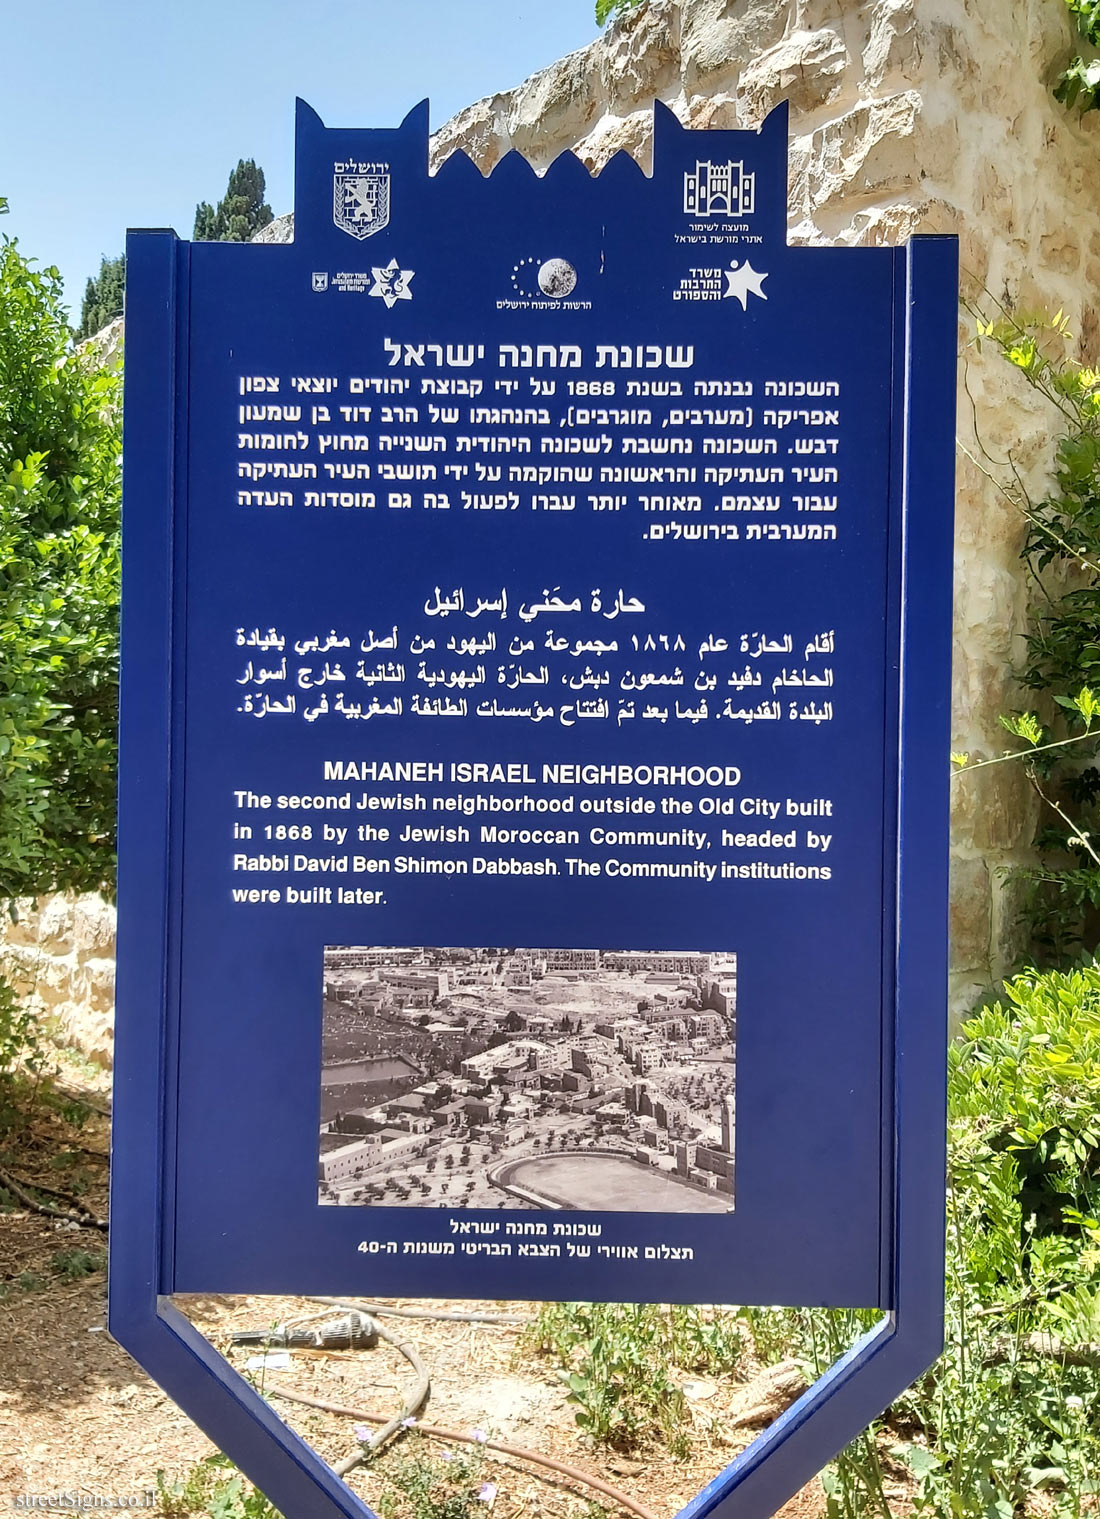 Jerusalem - Heritage Sites in Israel - Mahaneh Israel Neighborhood